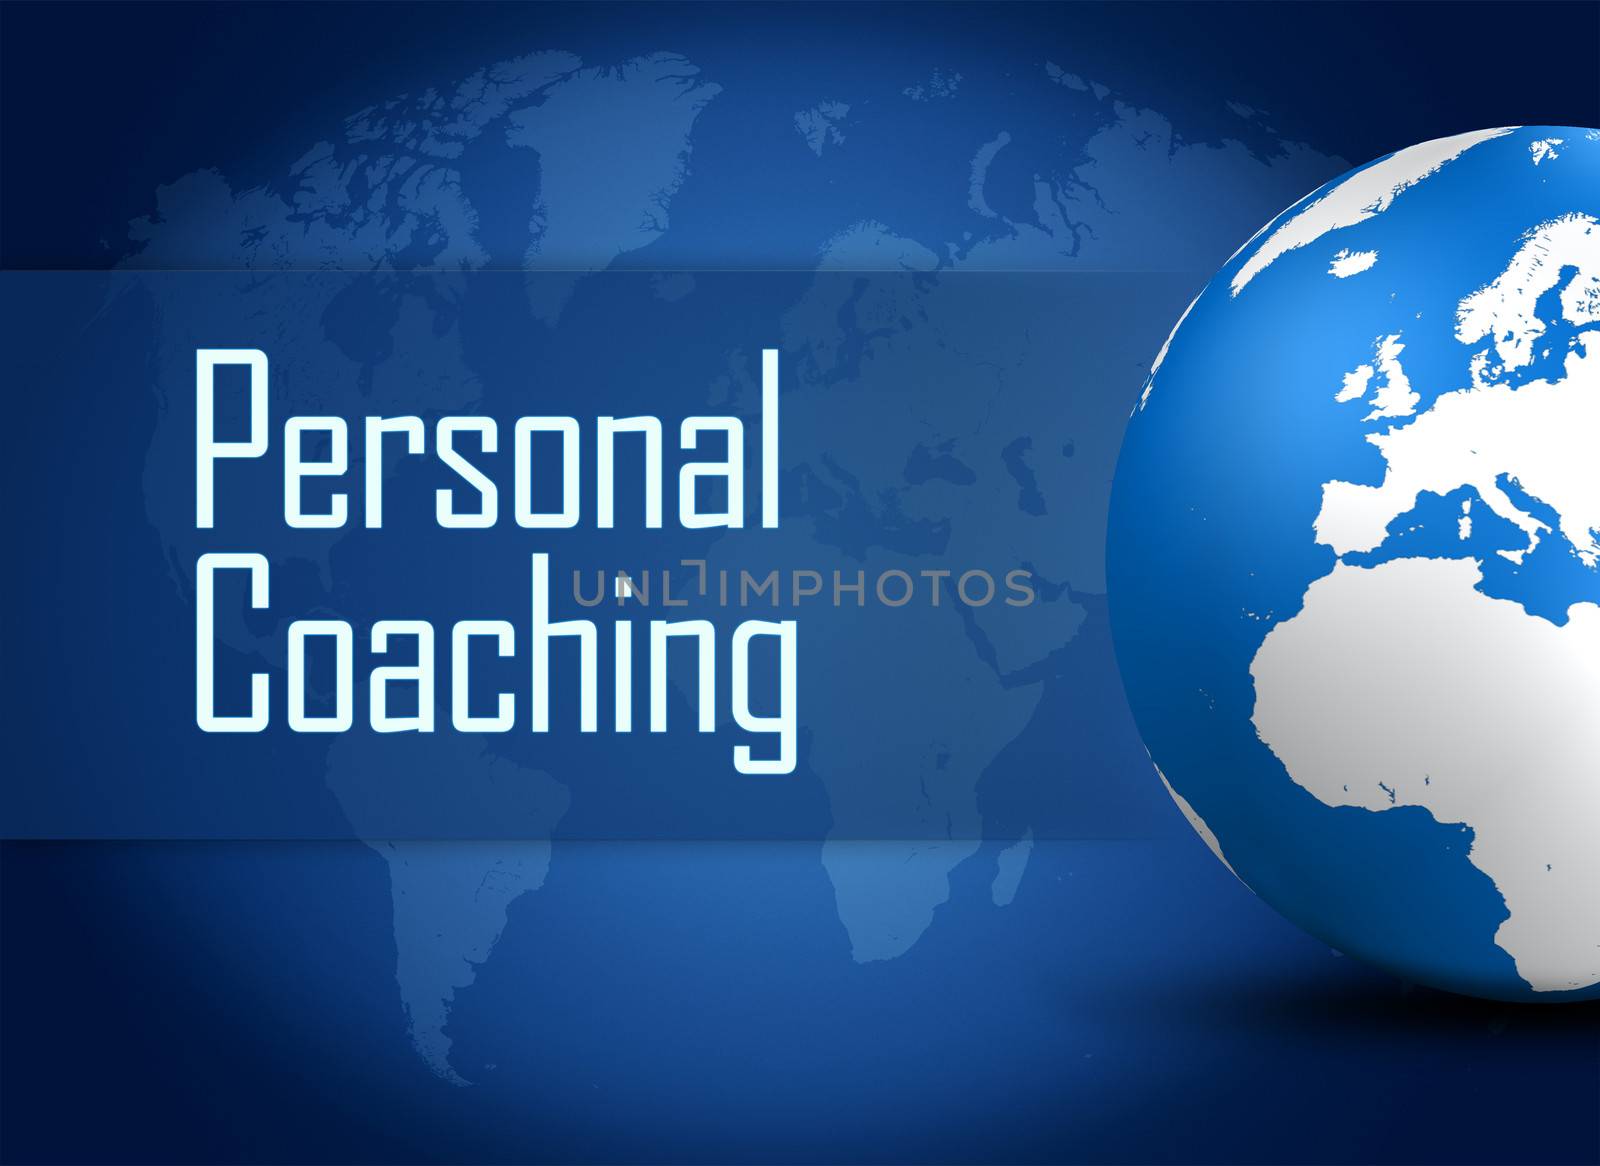 Personal Coaching by Mazirama